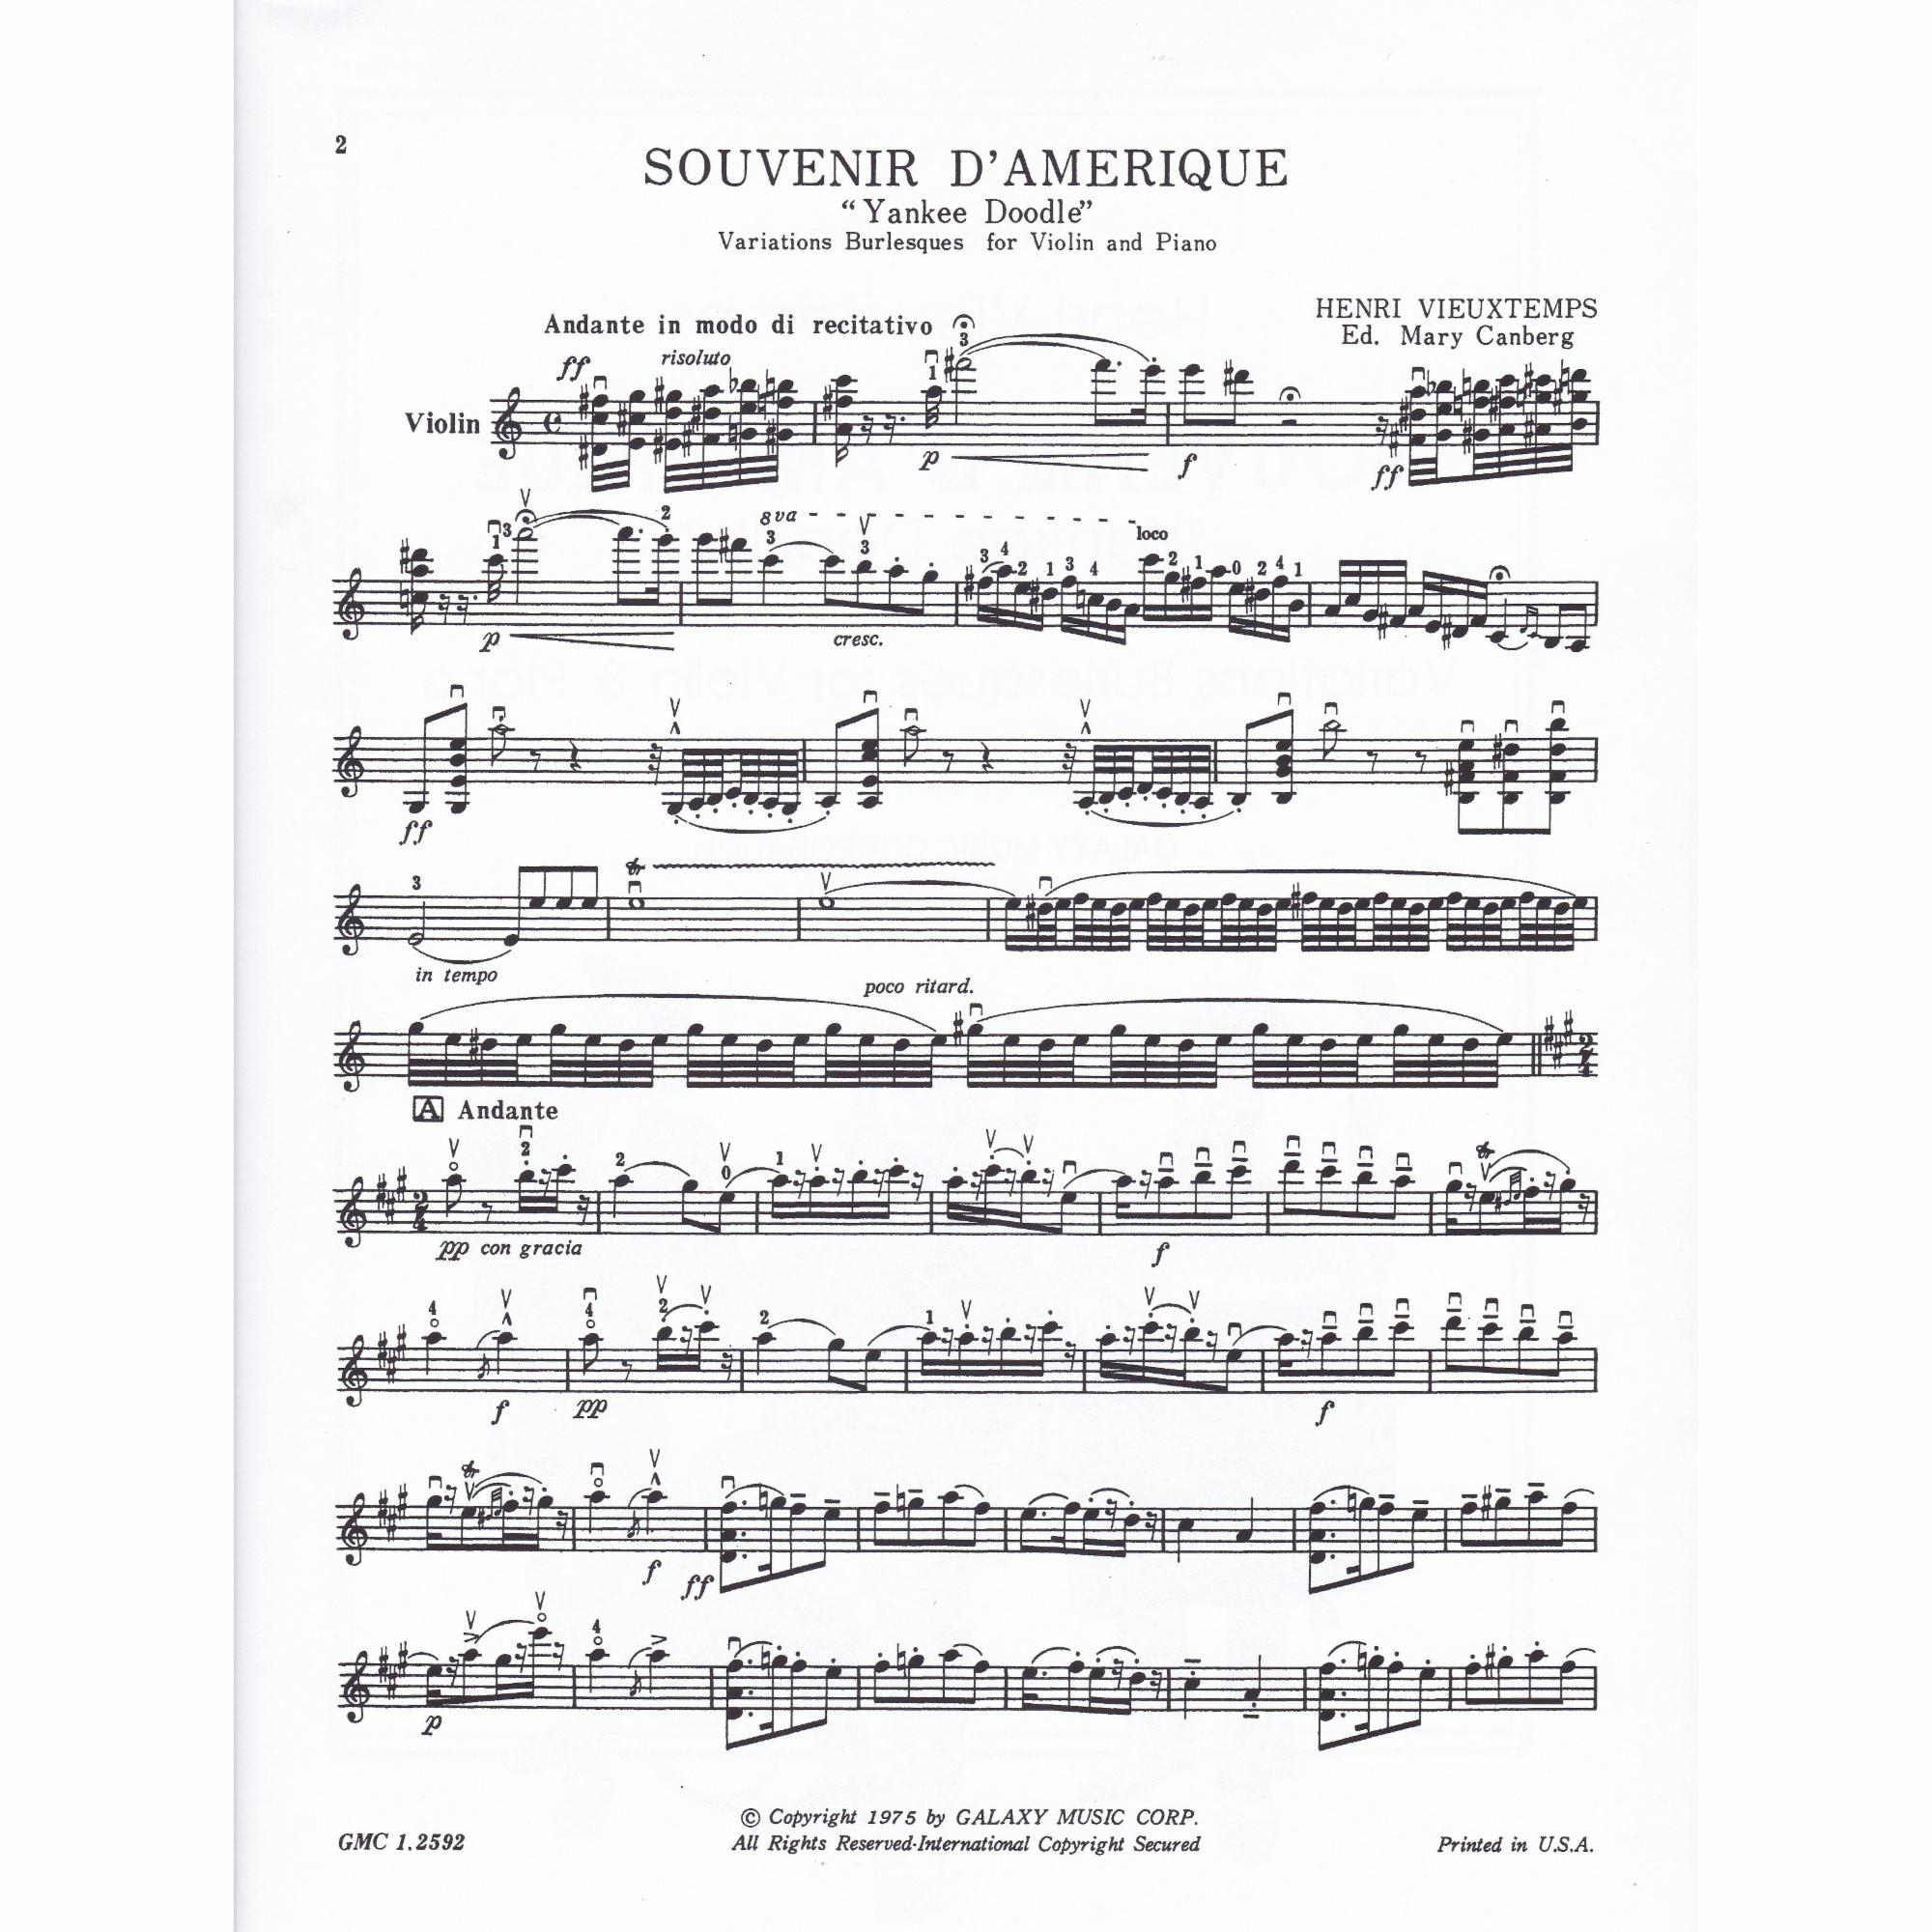 Souvenir d'Amerique for Violin and Piano, Op. 17